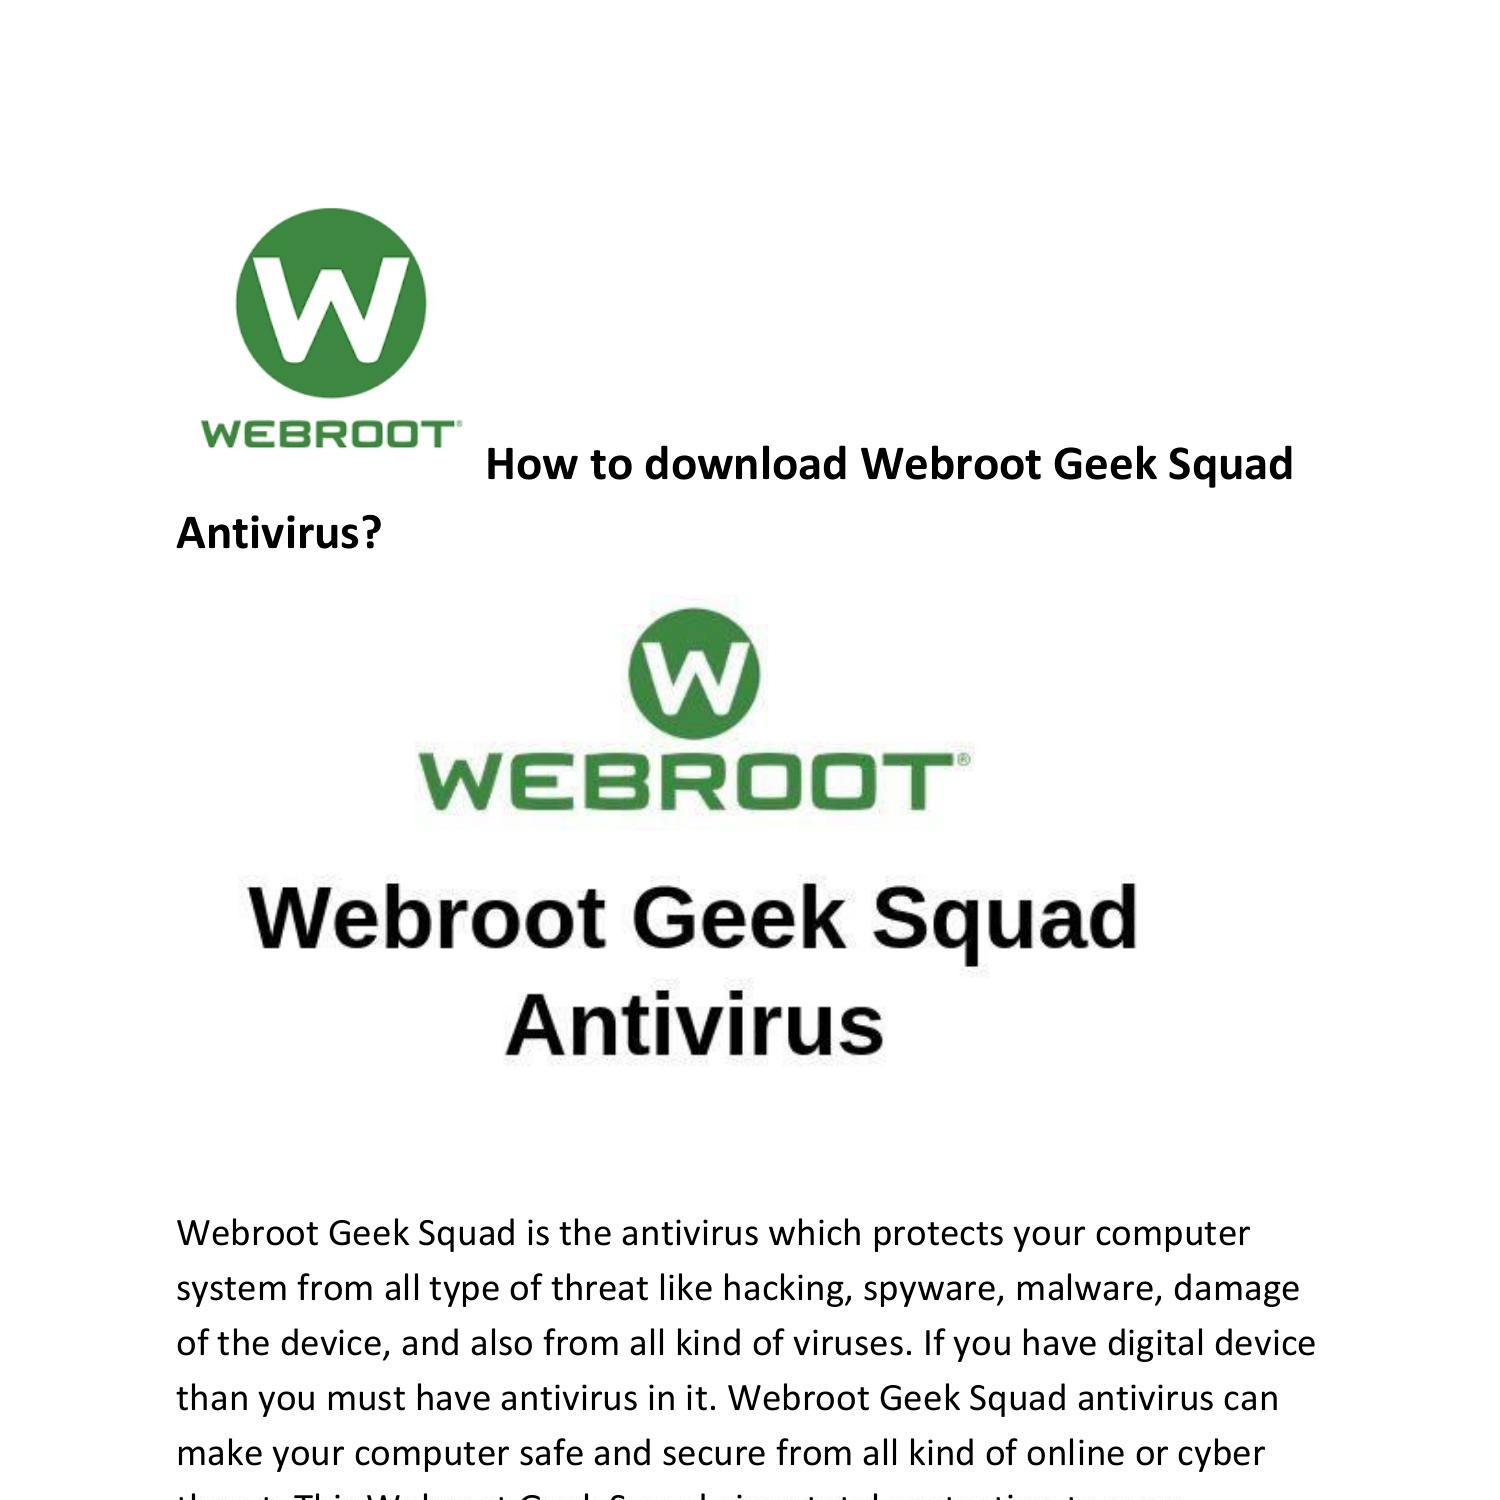 geek squad webroot account